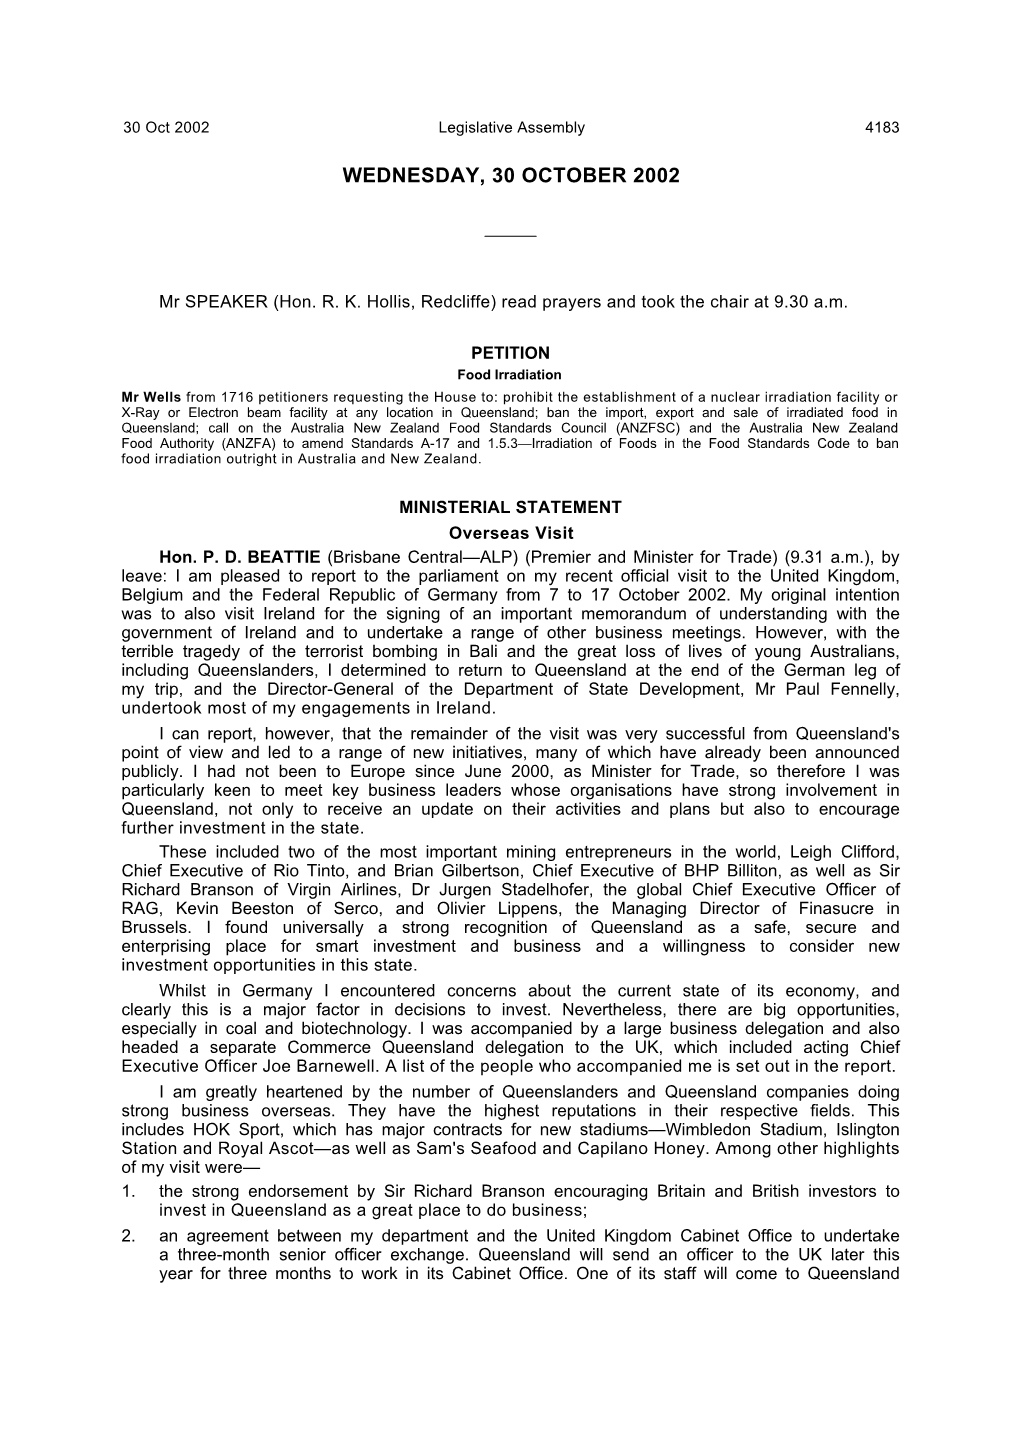 Hansard 30 October 2002